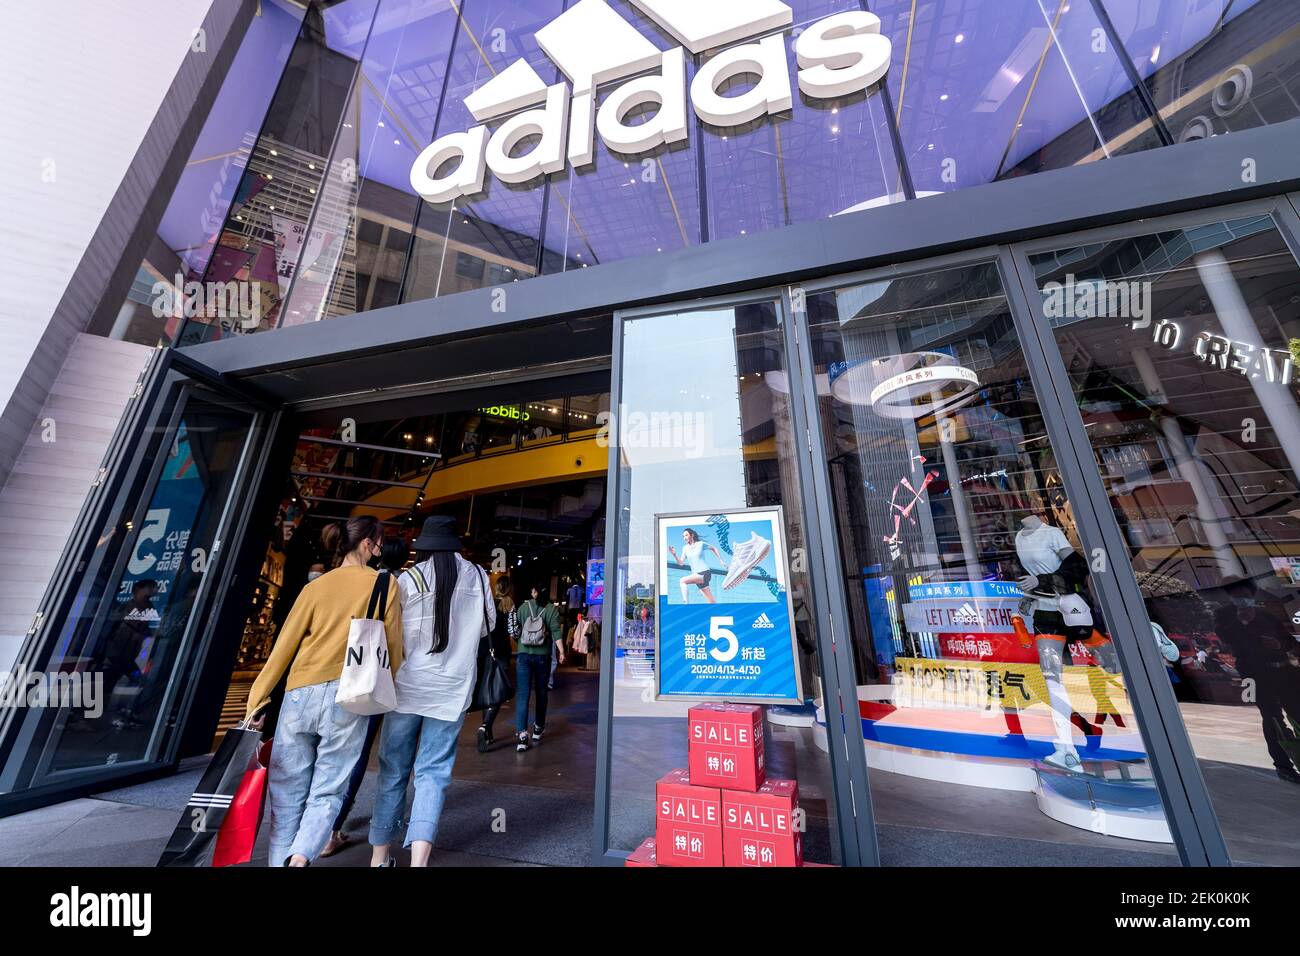 La vista exterior de una tienda Adidas, que lanza una promoción de 50% de  descuento para atraer clientes, Shanghai, China, 24 de abril de 2020  Fotografía de stock - Alamy